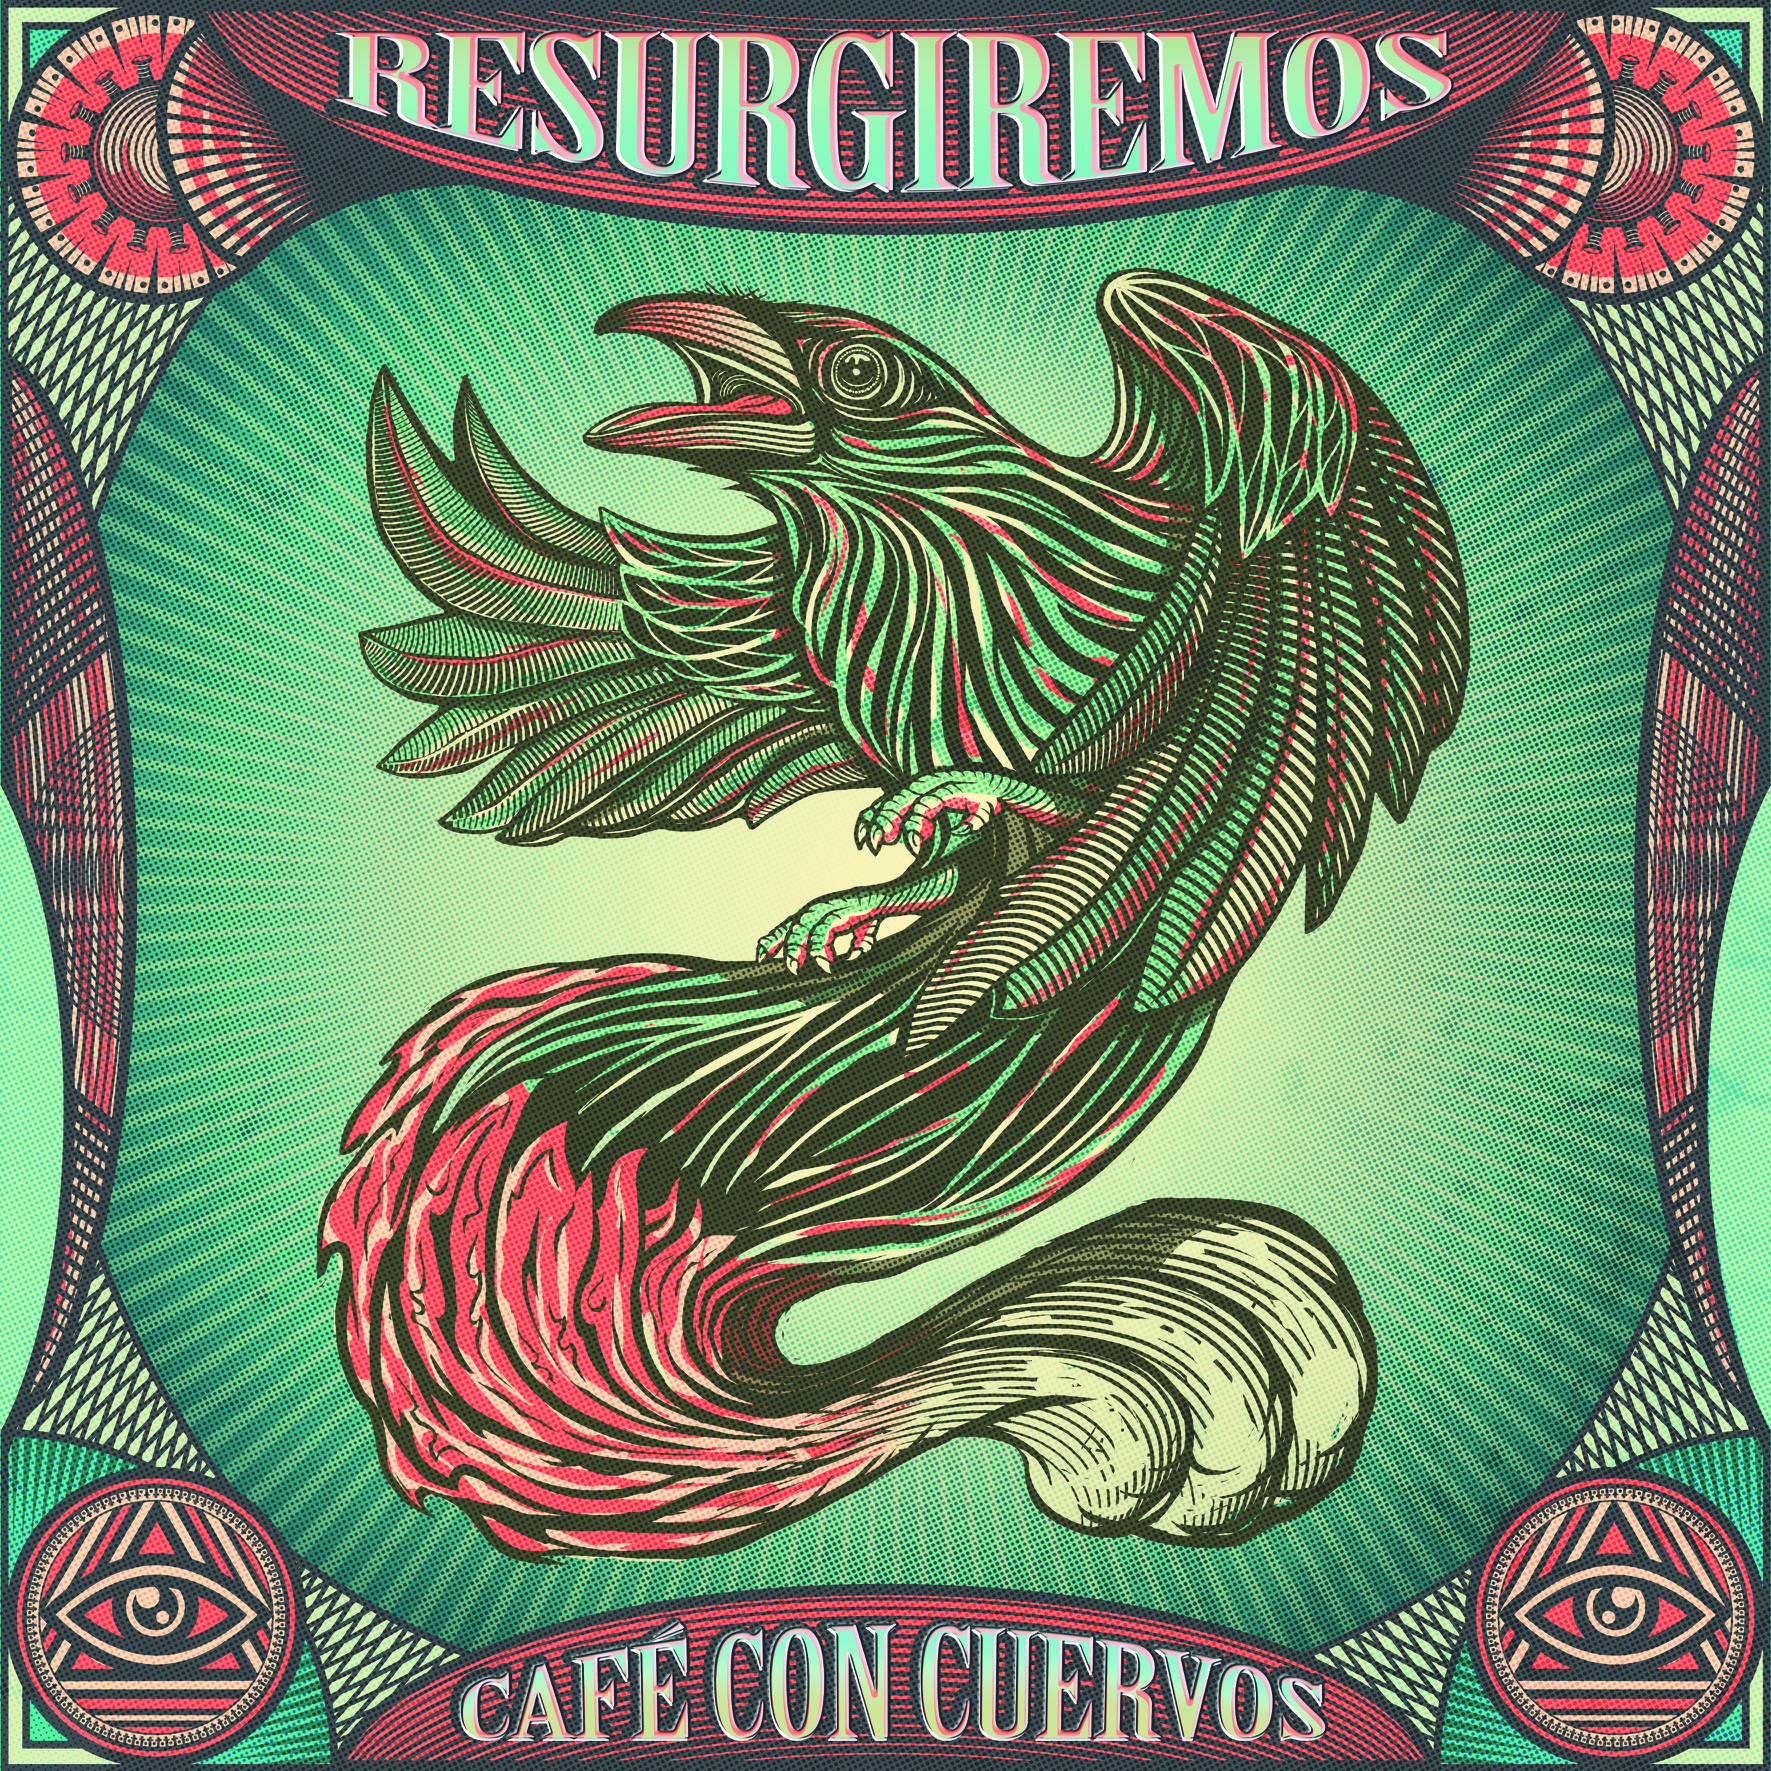  Café Con Cuervos estrena “Resurgiremos!!”